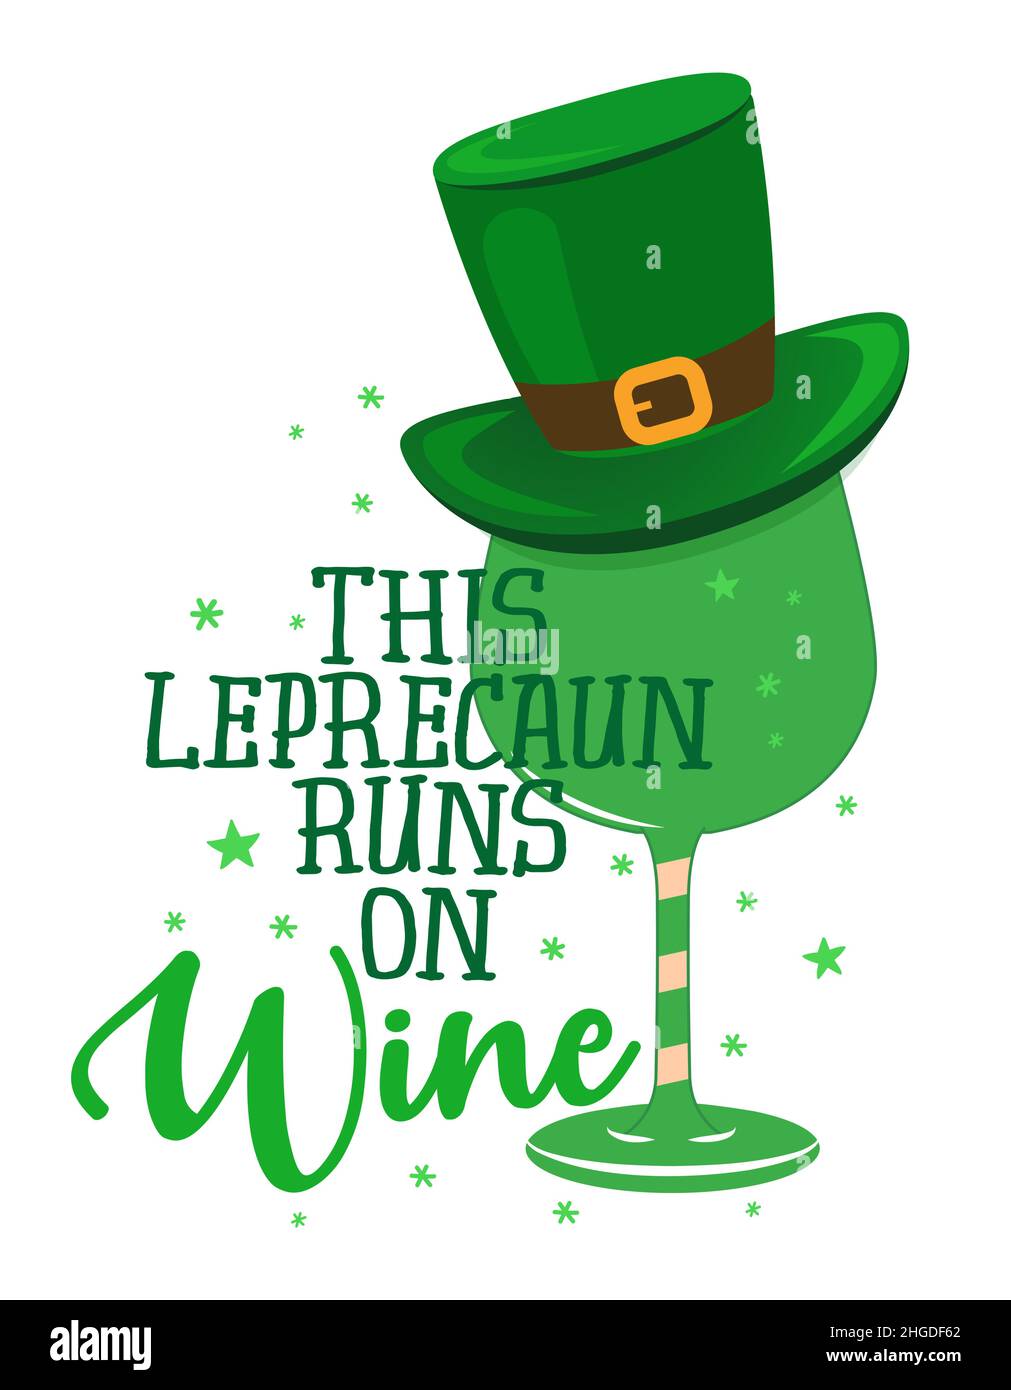 Dieser Kobold Runs on Wine - lustiges St. Patrick's Day inspirierendes Schriftzüge-Design für Poster, Flyer, T-Shirts, Karten, Einladungen, Aufkleber, Bann Stock Vektor